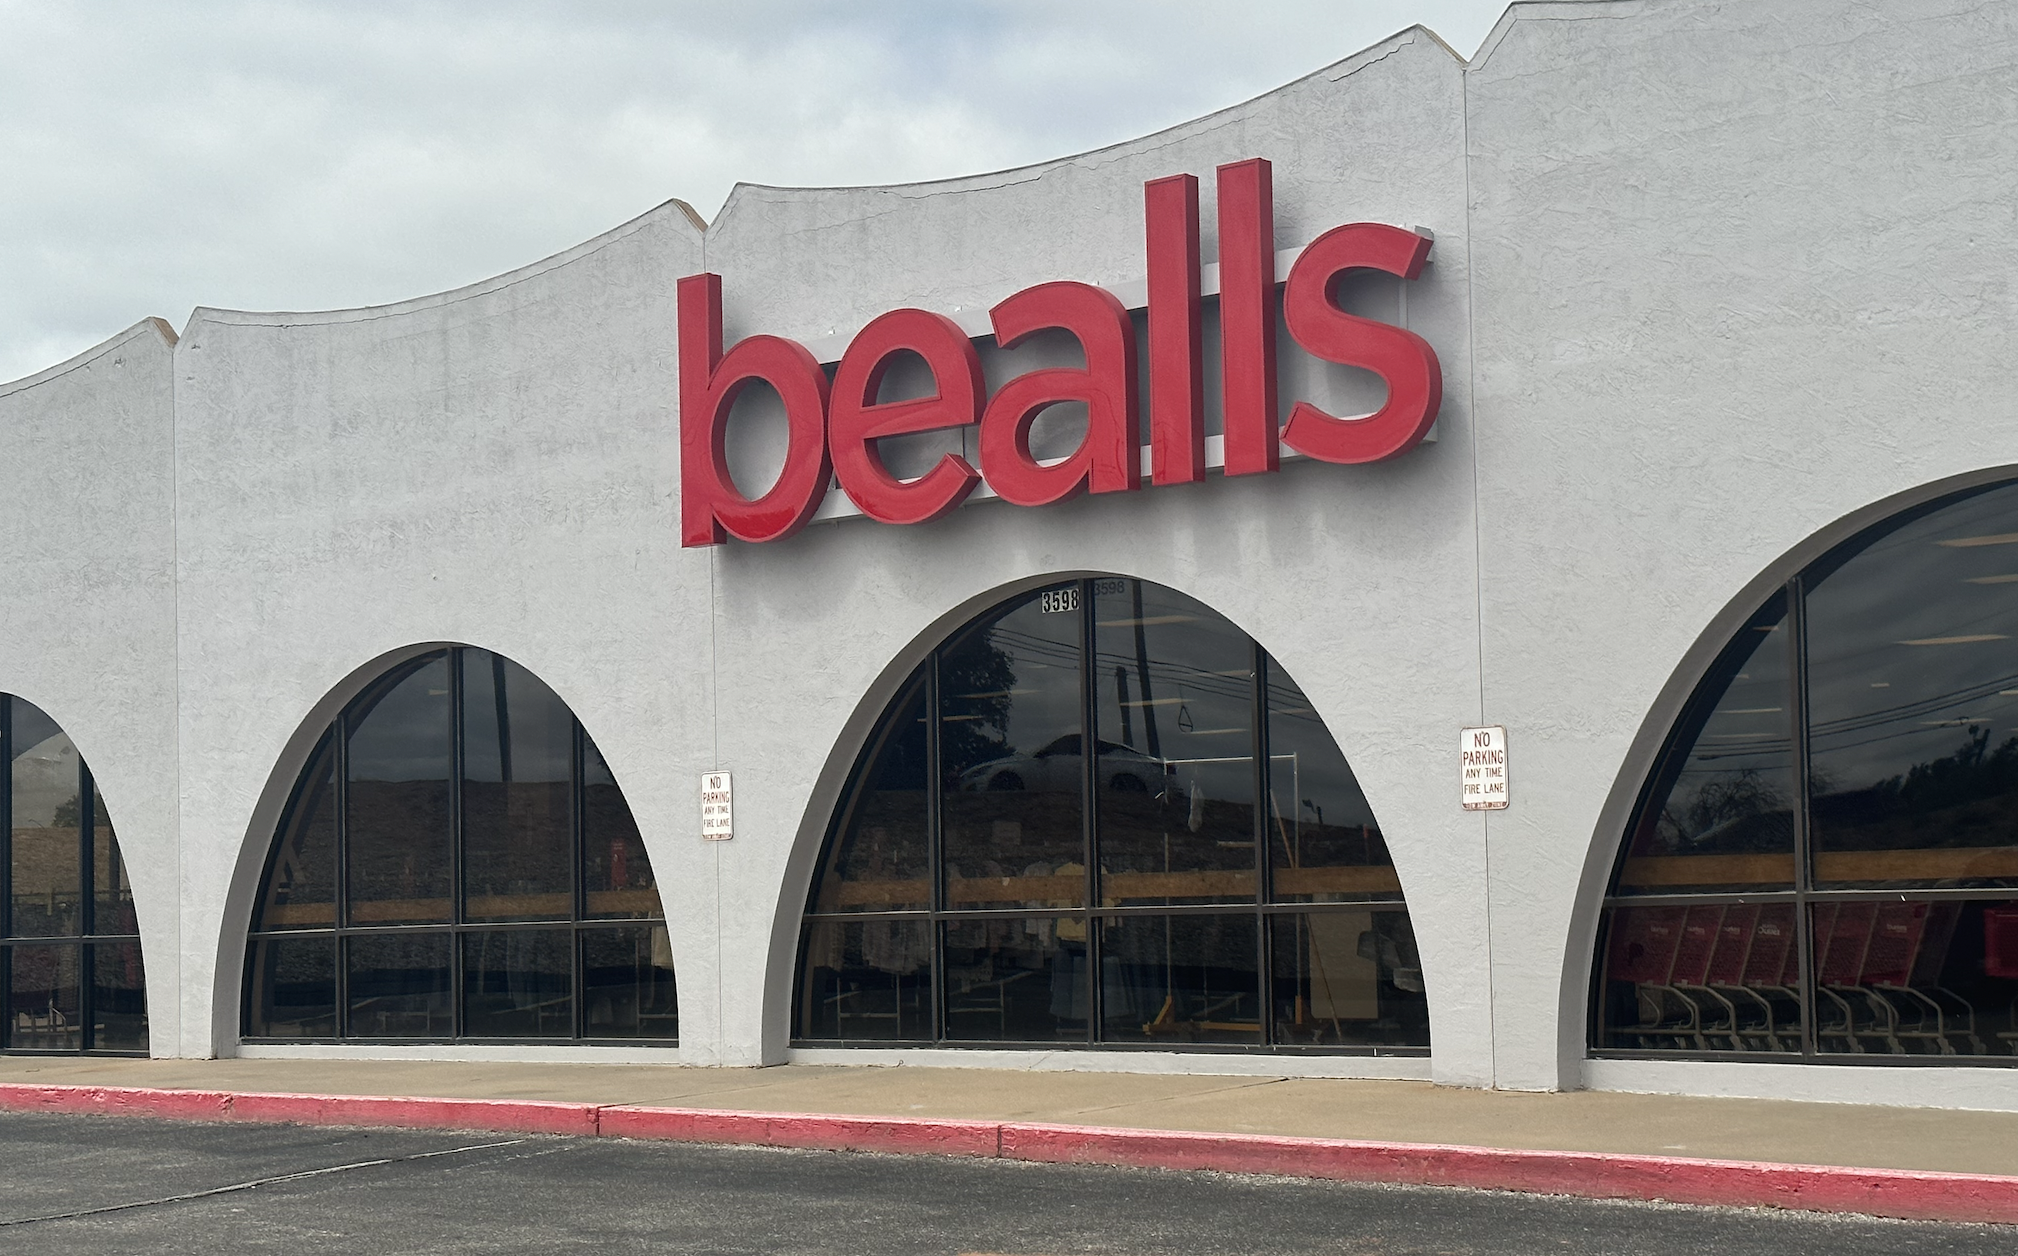 Burkes Outlet renamed bealls, Business